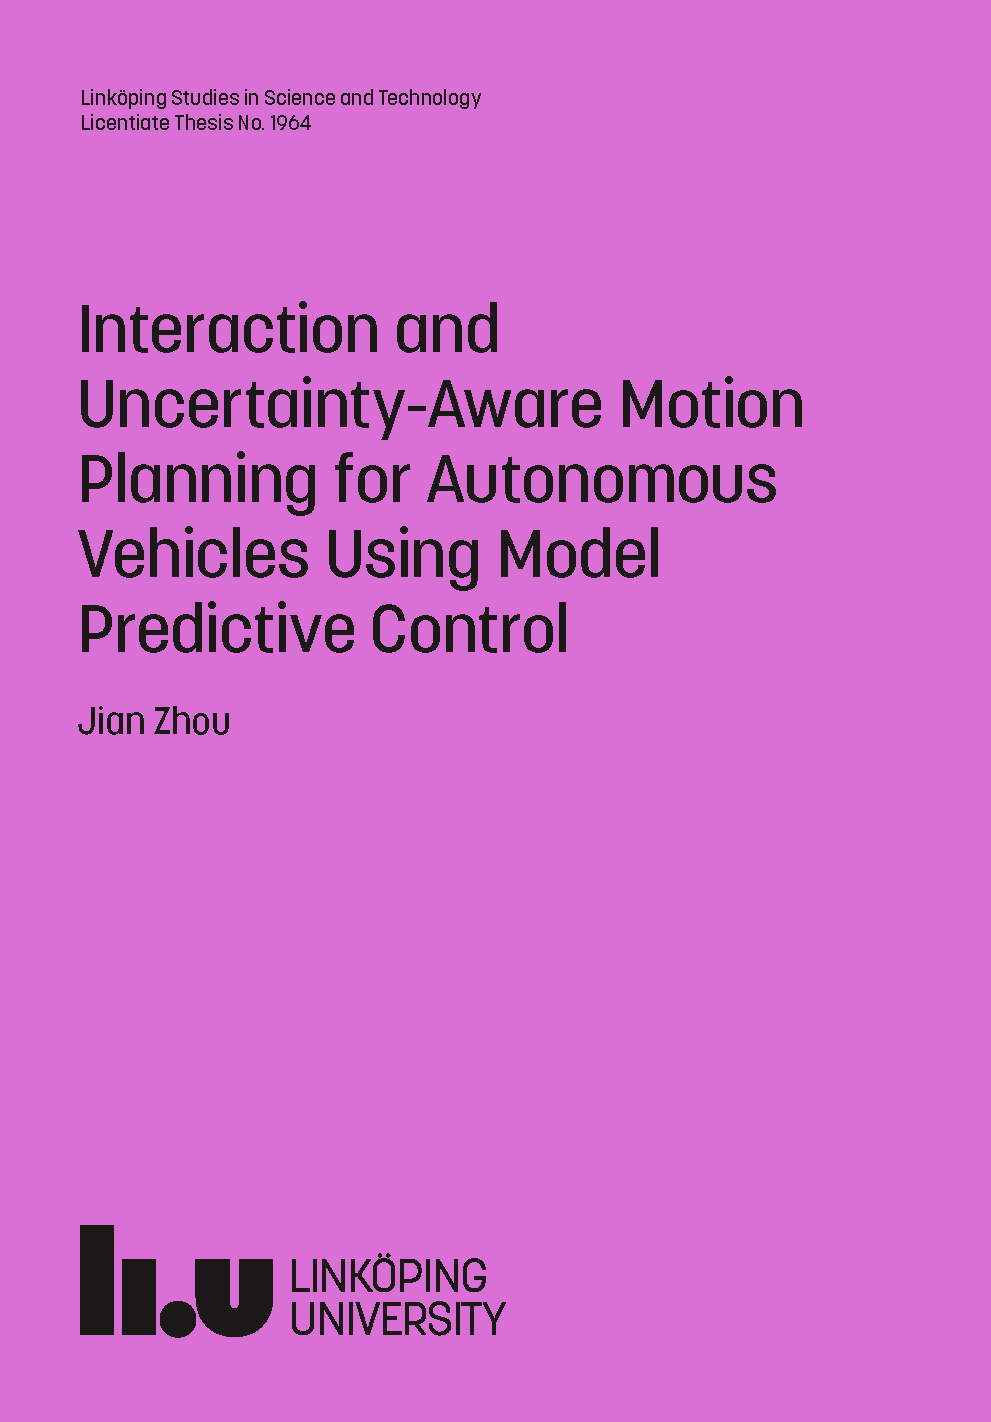 thesis on autonomous vehicles